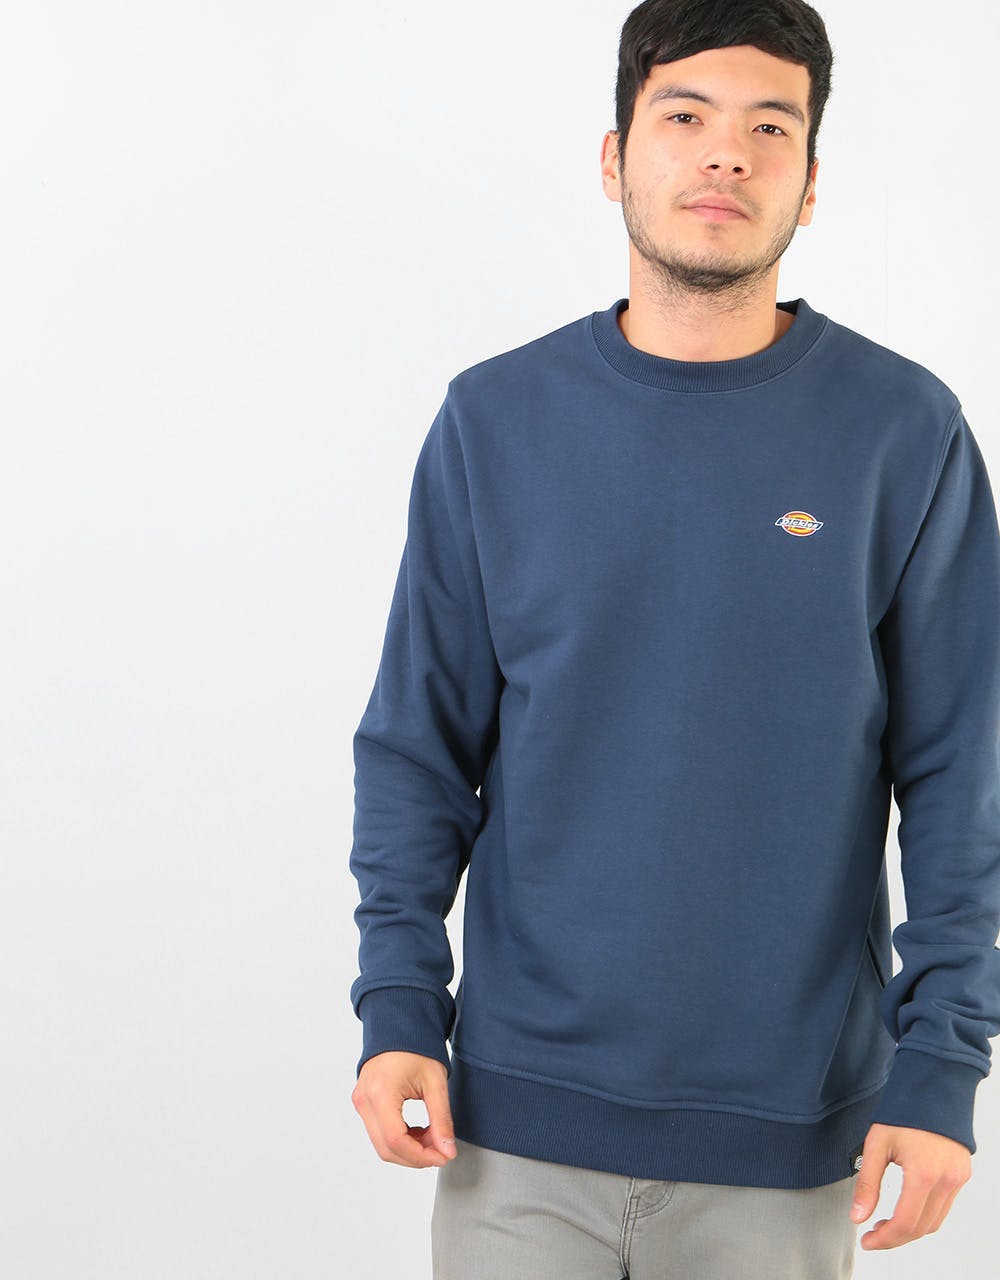 Dickies Seabrook Sweatshirt - Navy Blue